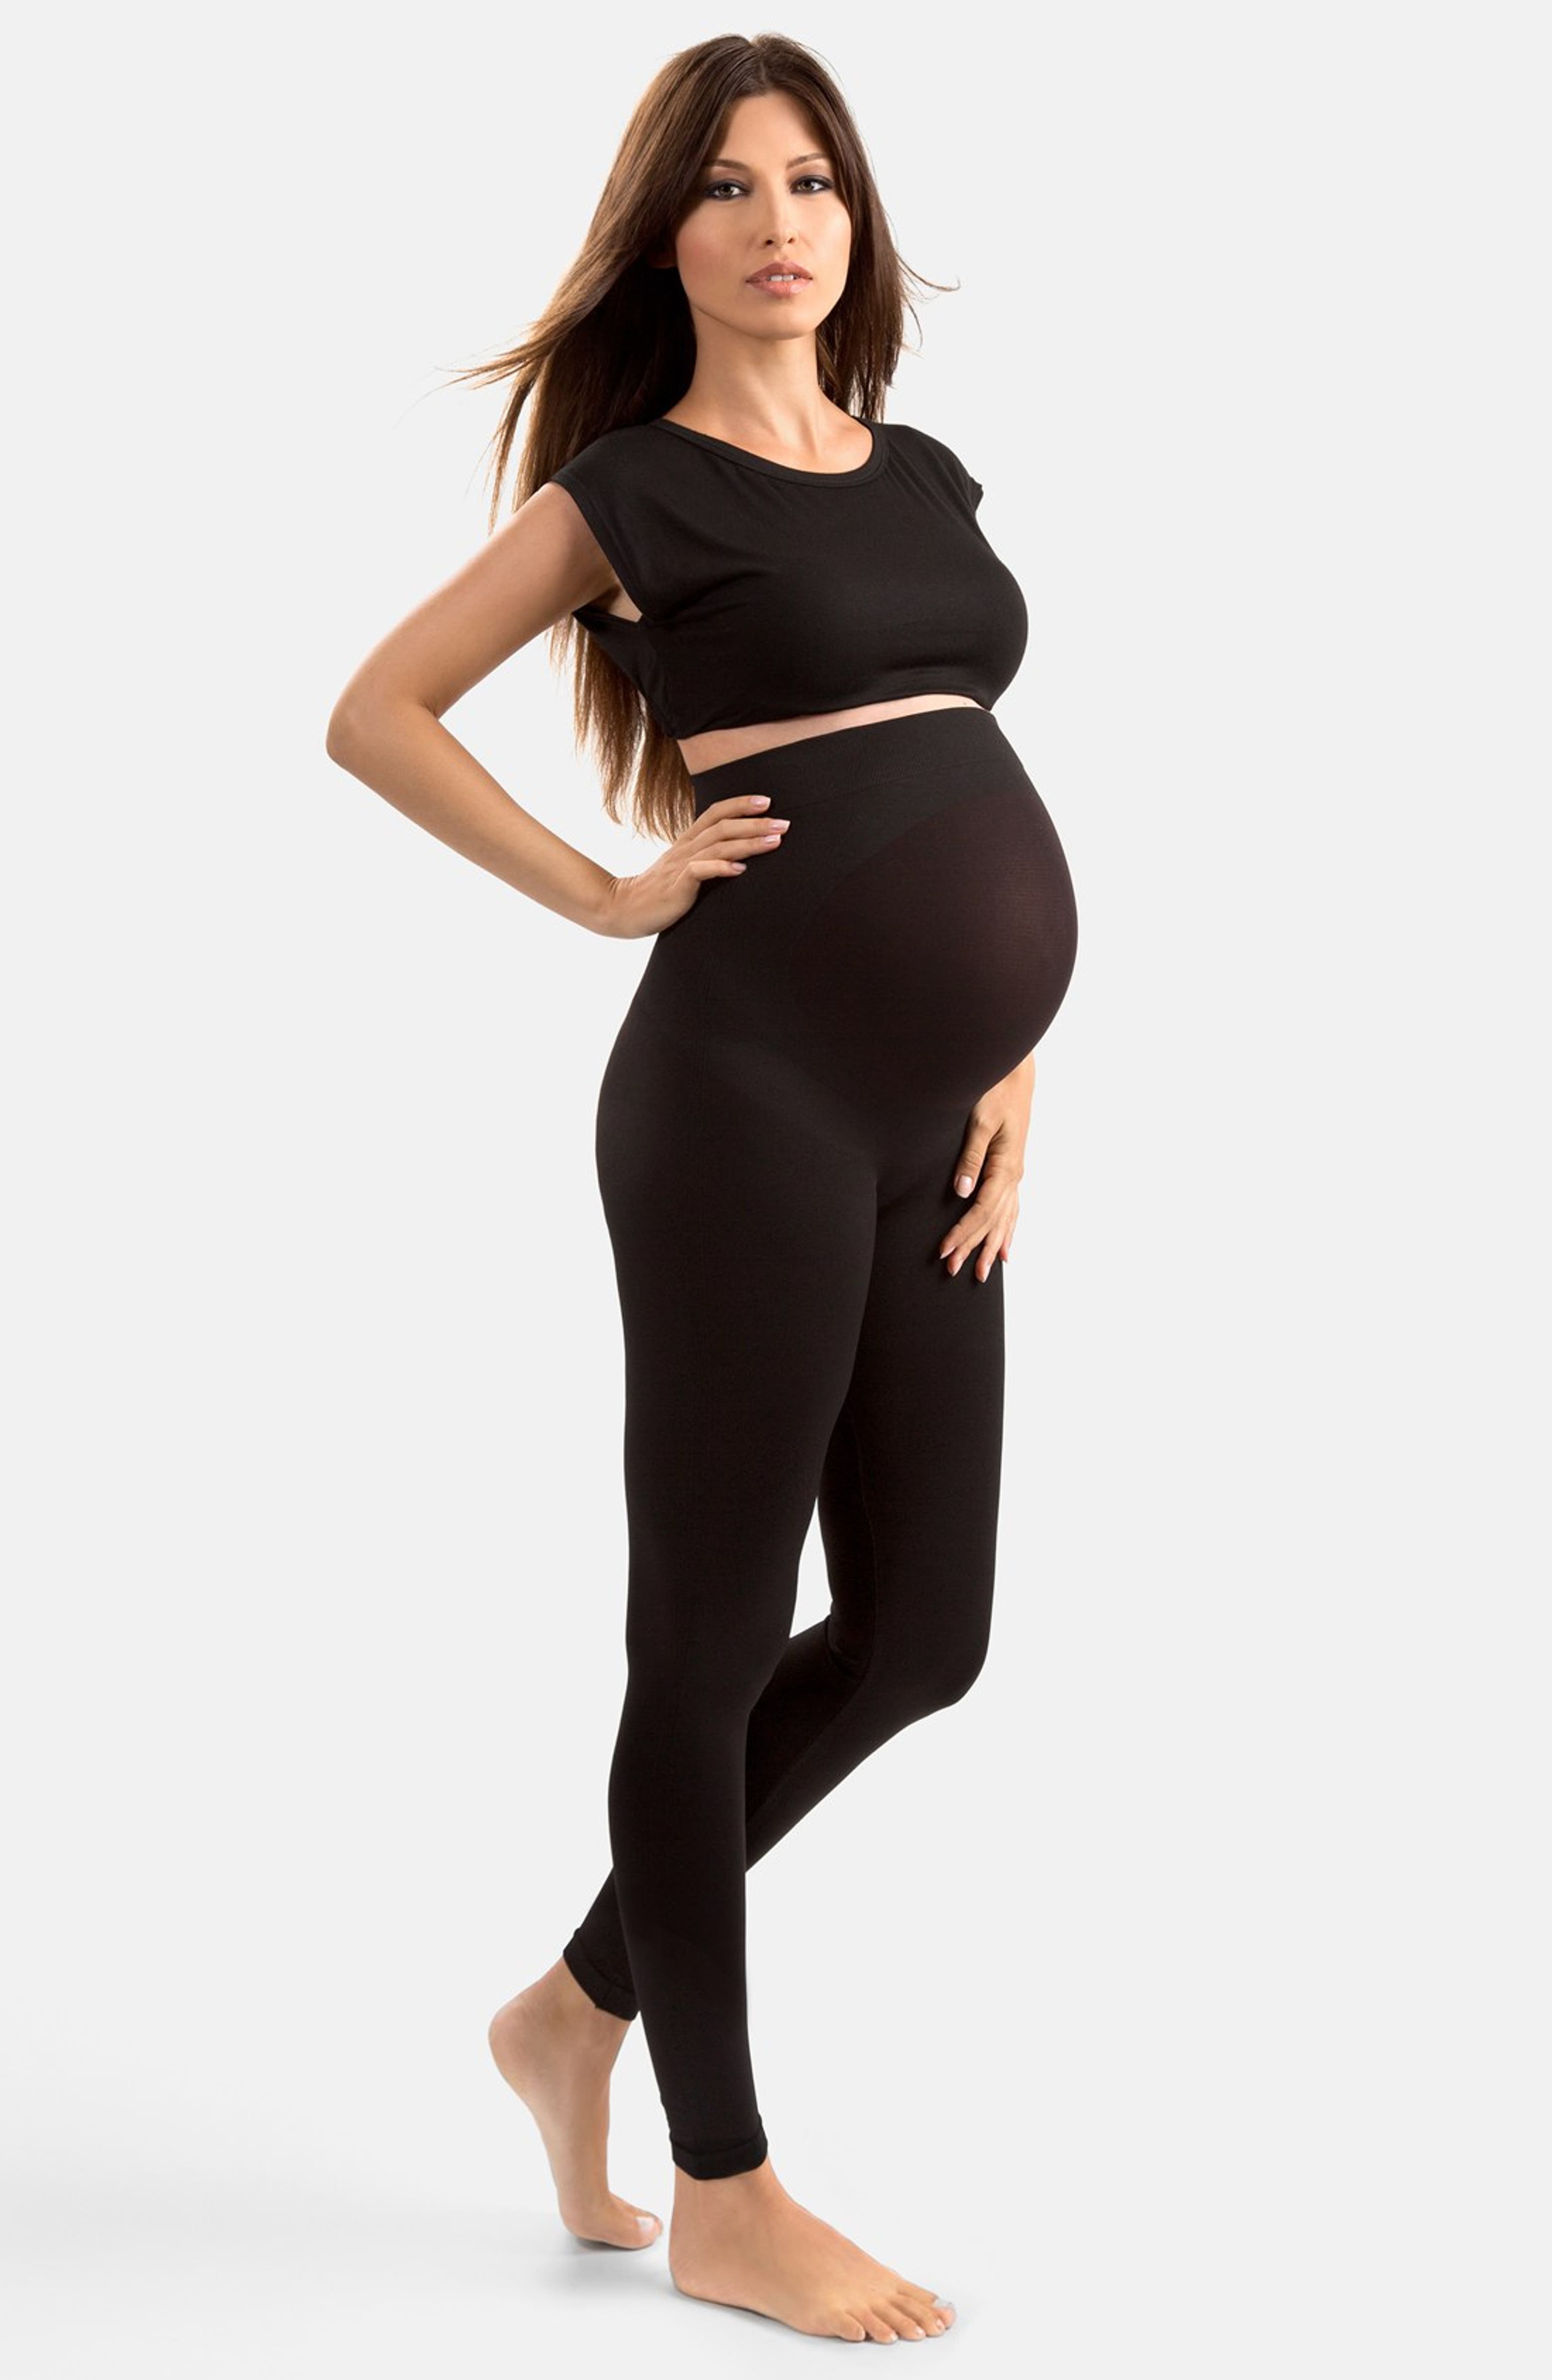 Plus Size Maternity Leggings Sewing Pattern PDF, Sizes L, XL, 2XL, 3XL, 4XL  